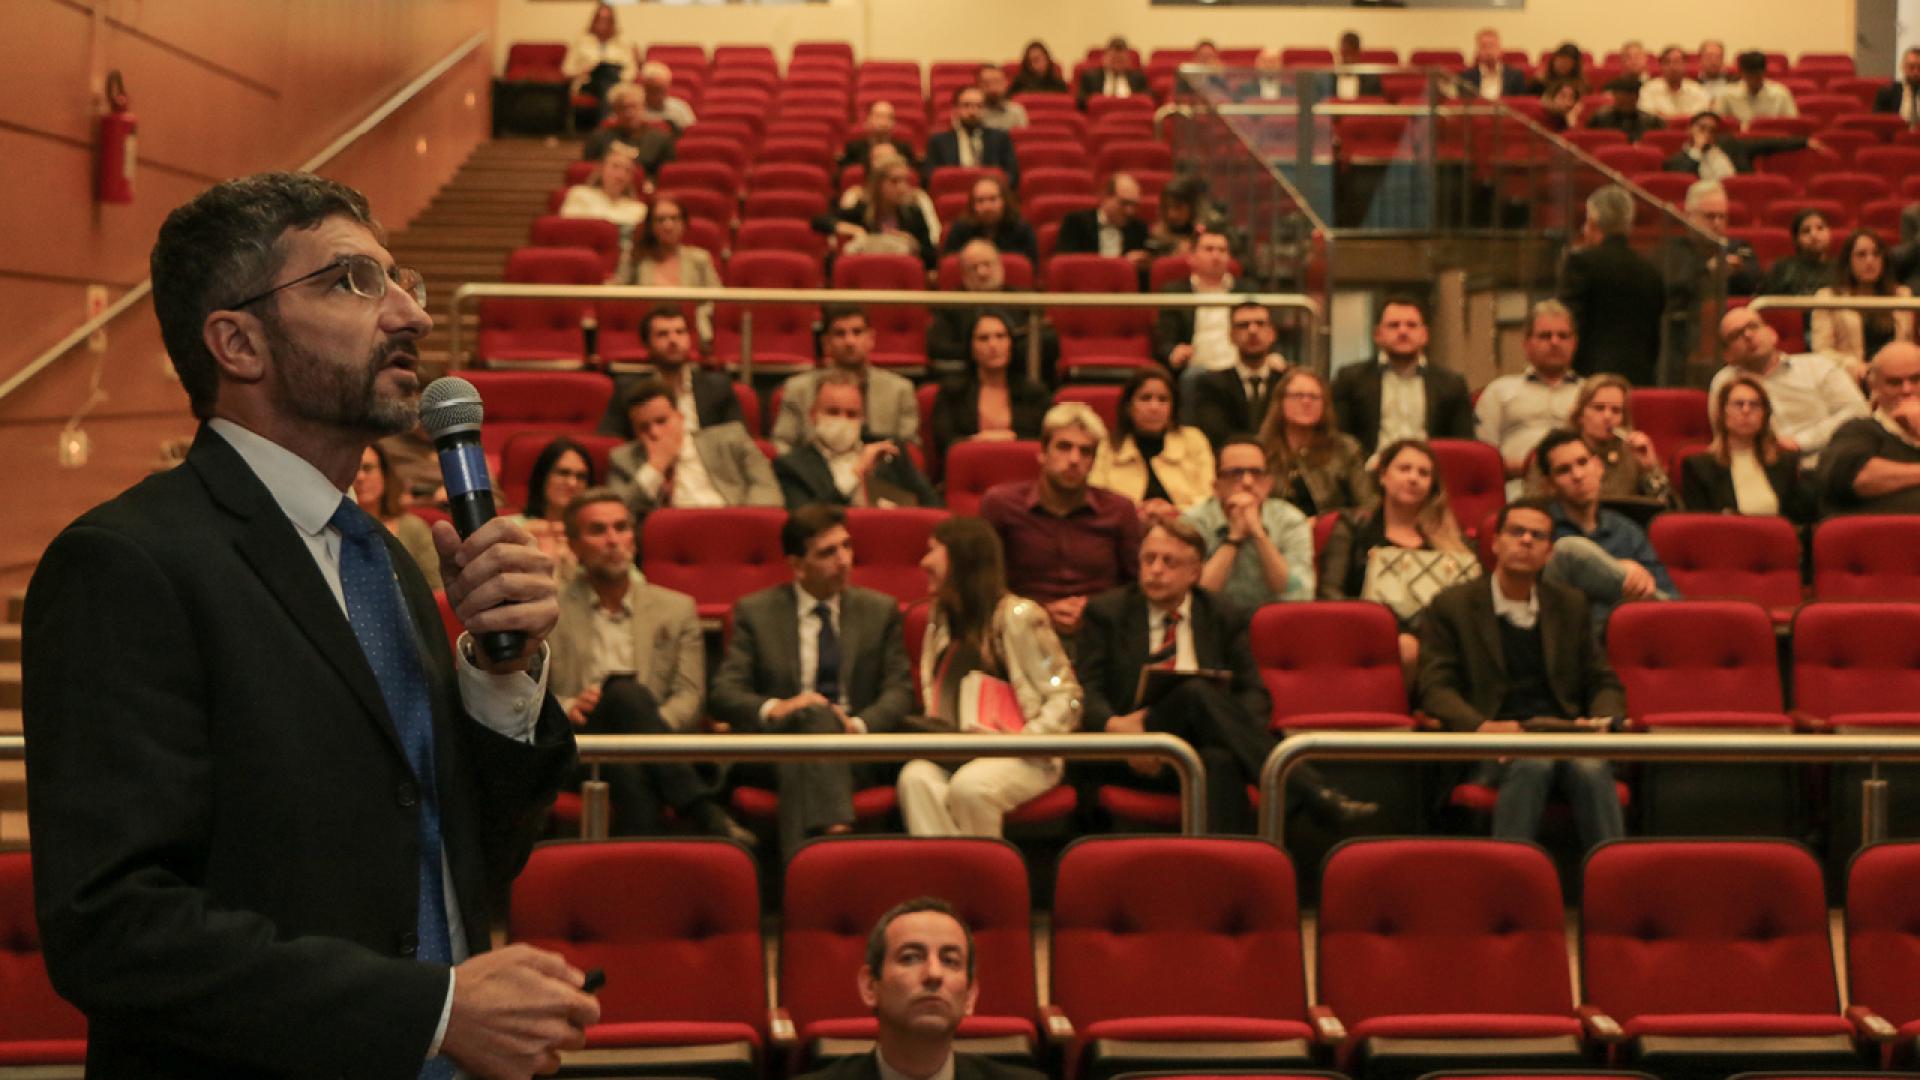 Foto do auditório do TCE, a partir do palco em direção à plateia, com o público ao fundo. Em primeiro plano, à esquerda, o palestrante Azor El Achkar olhando para a direita, segurando o microfone. Azor é branco, de barba, e está de terno preto e gravata azul.